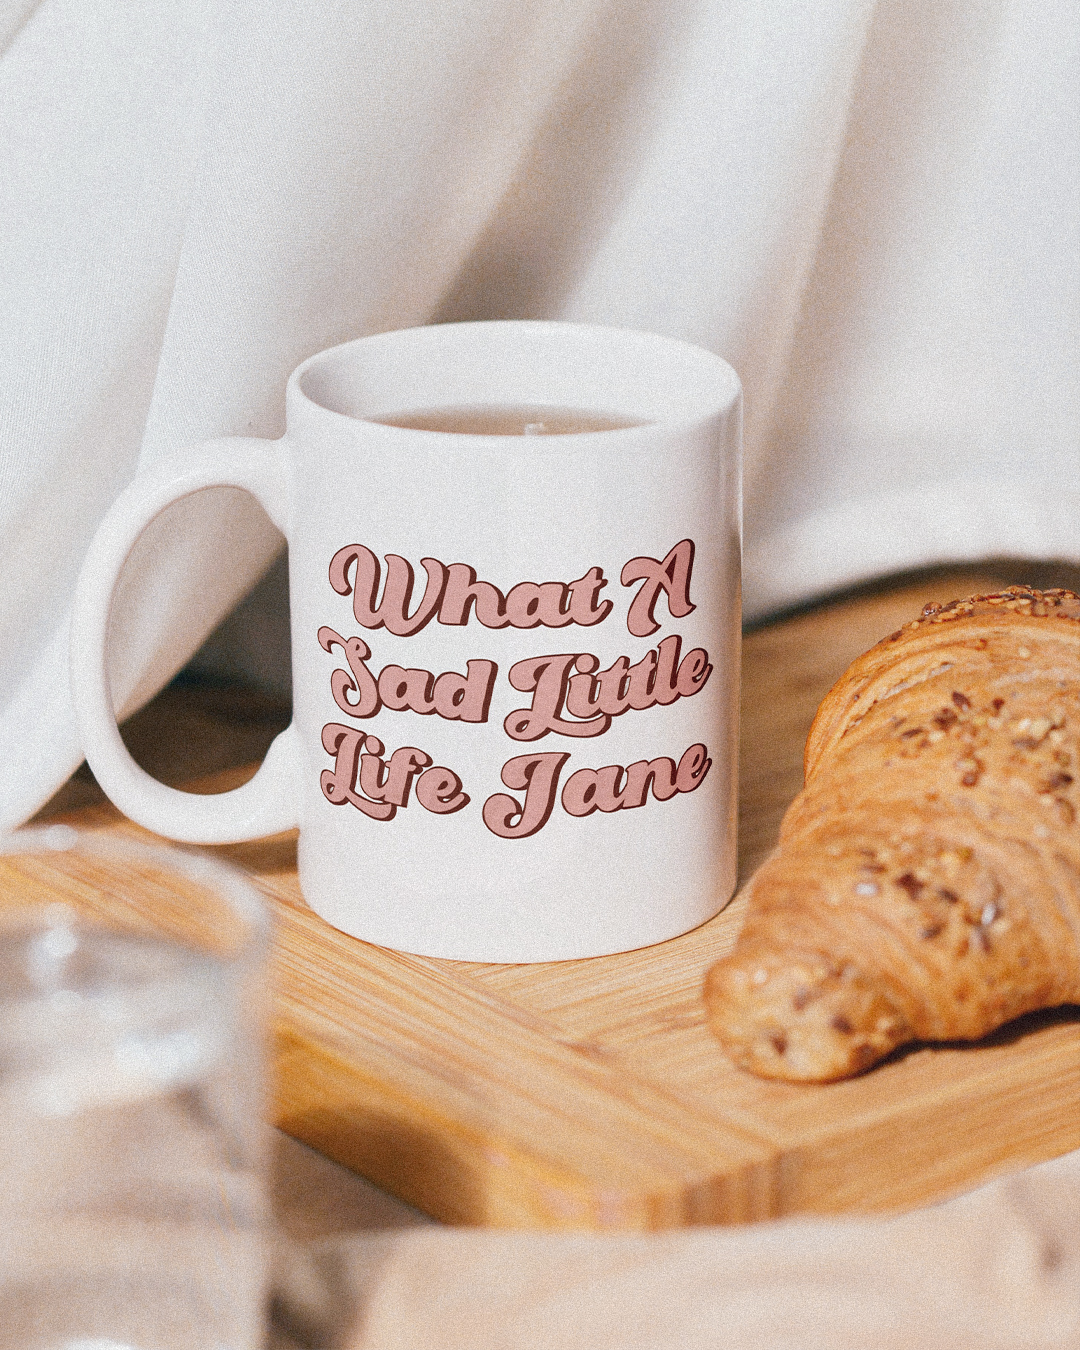 What A Sad Little Life Jane Mug - Come Dine With Me Inspired Mug - British Humour Mug - What A Sad Little Life Jane Mug